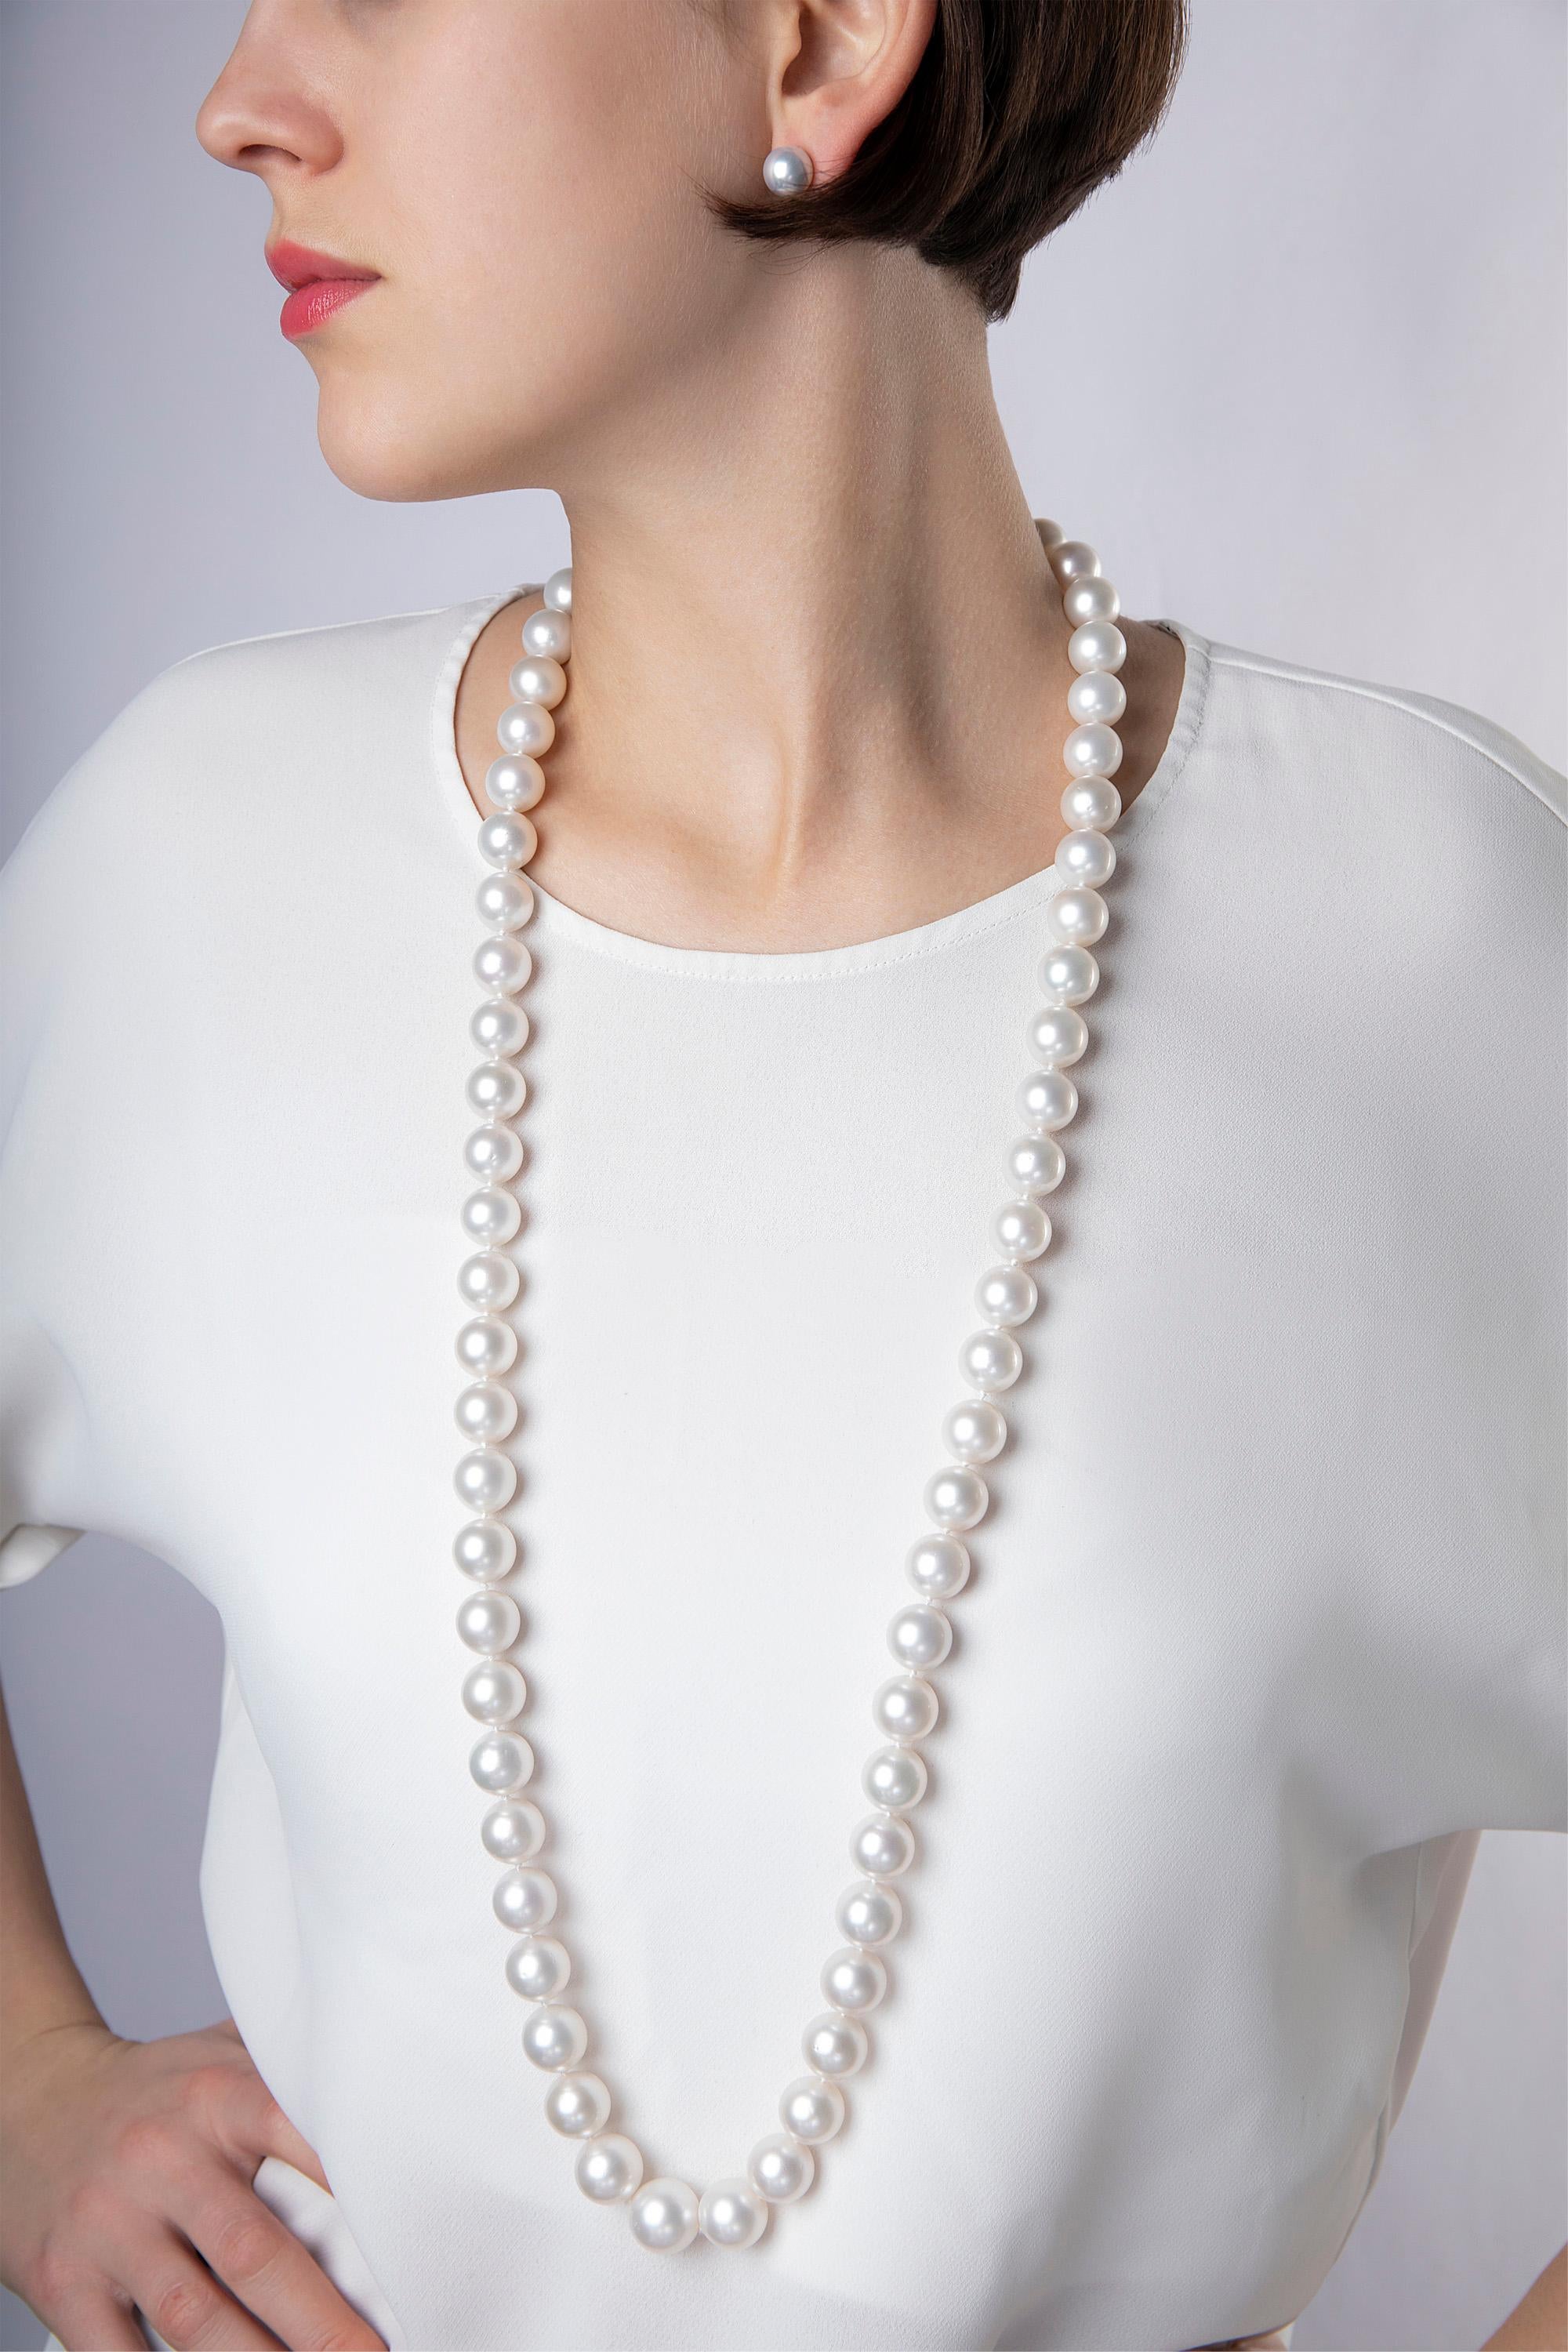 Diese lange, klassische Halskette von Yoko London ist ein kühnes Statement für die ultimative Perlenliebhaberin. Sie besteht aus seltenen Südseeperlen von außergewöhnlicher Qualität, die an einem Kugelverschluss aus 18 Karat Weißgold befestigt sind.